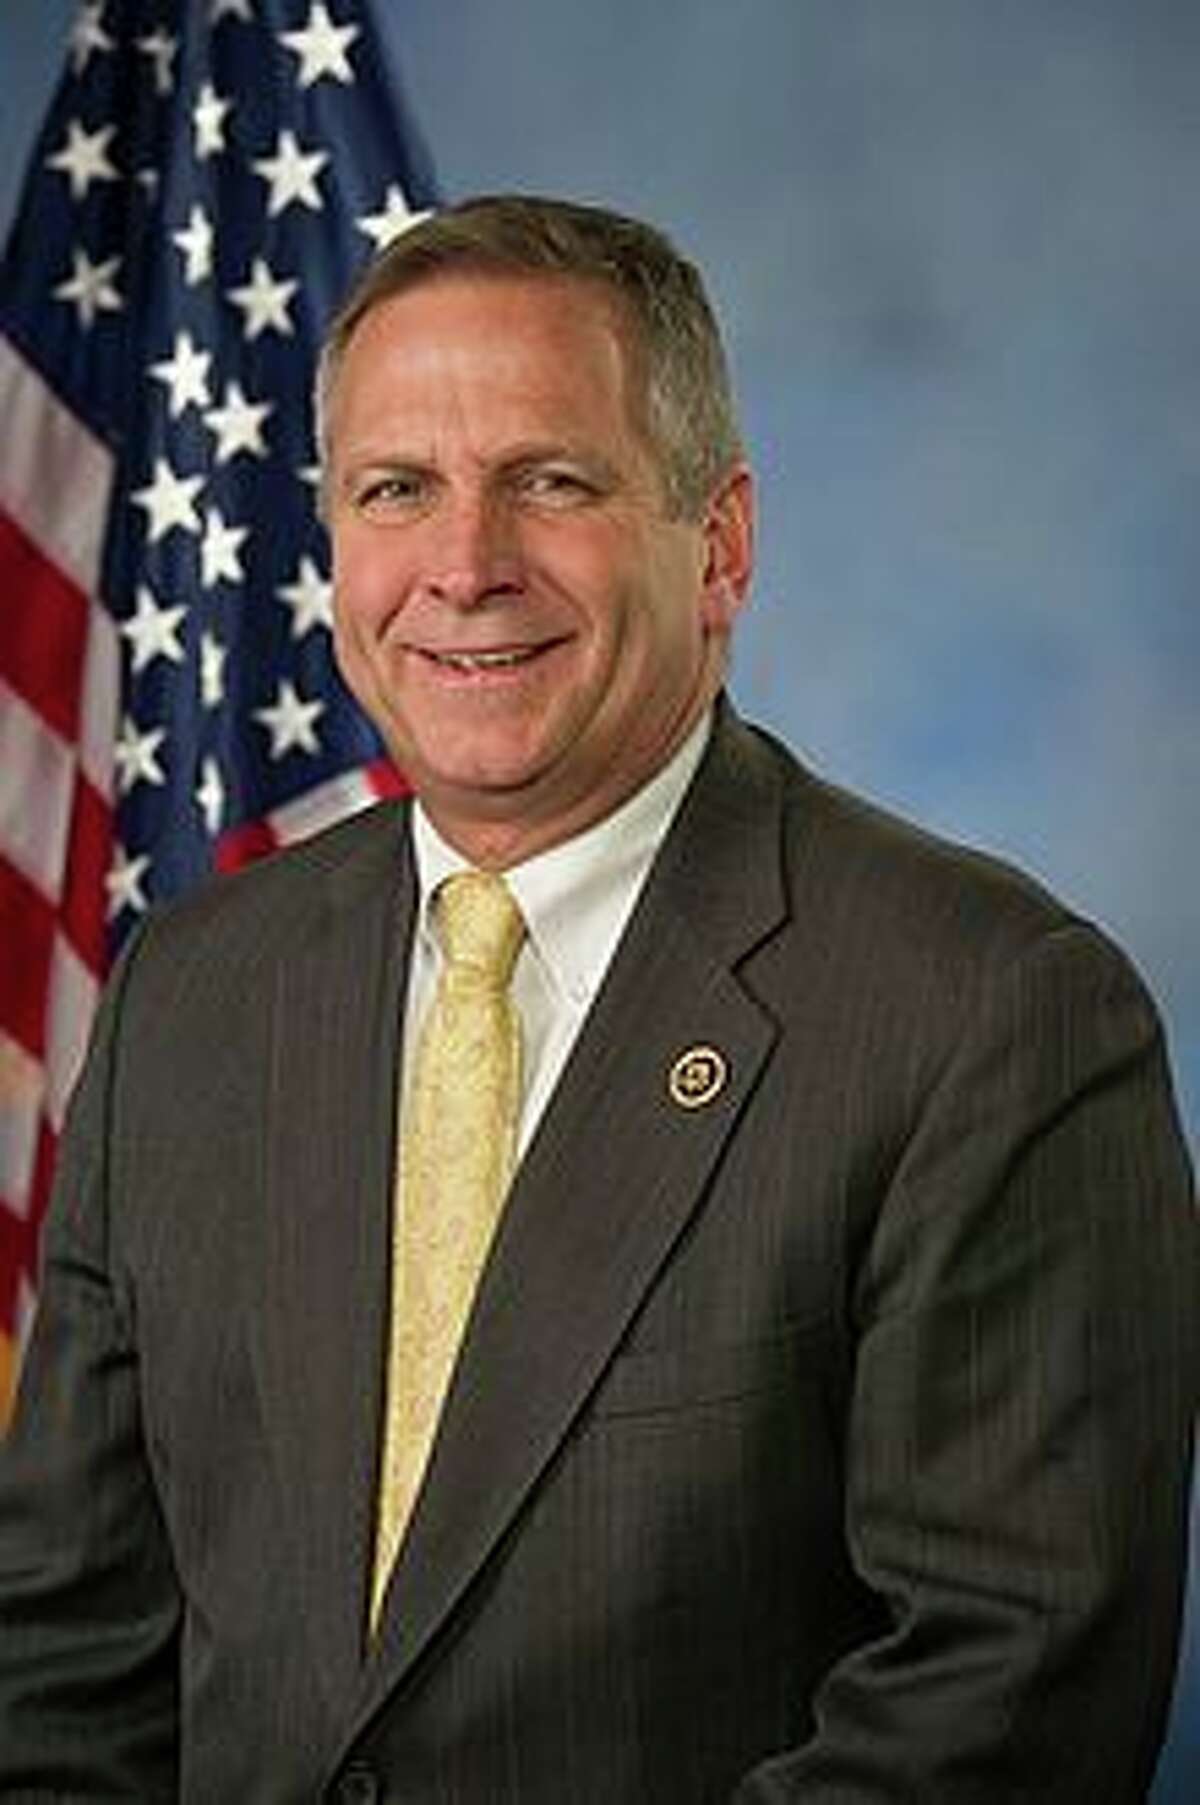 U.S. Rep. Mike Bost